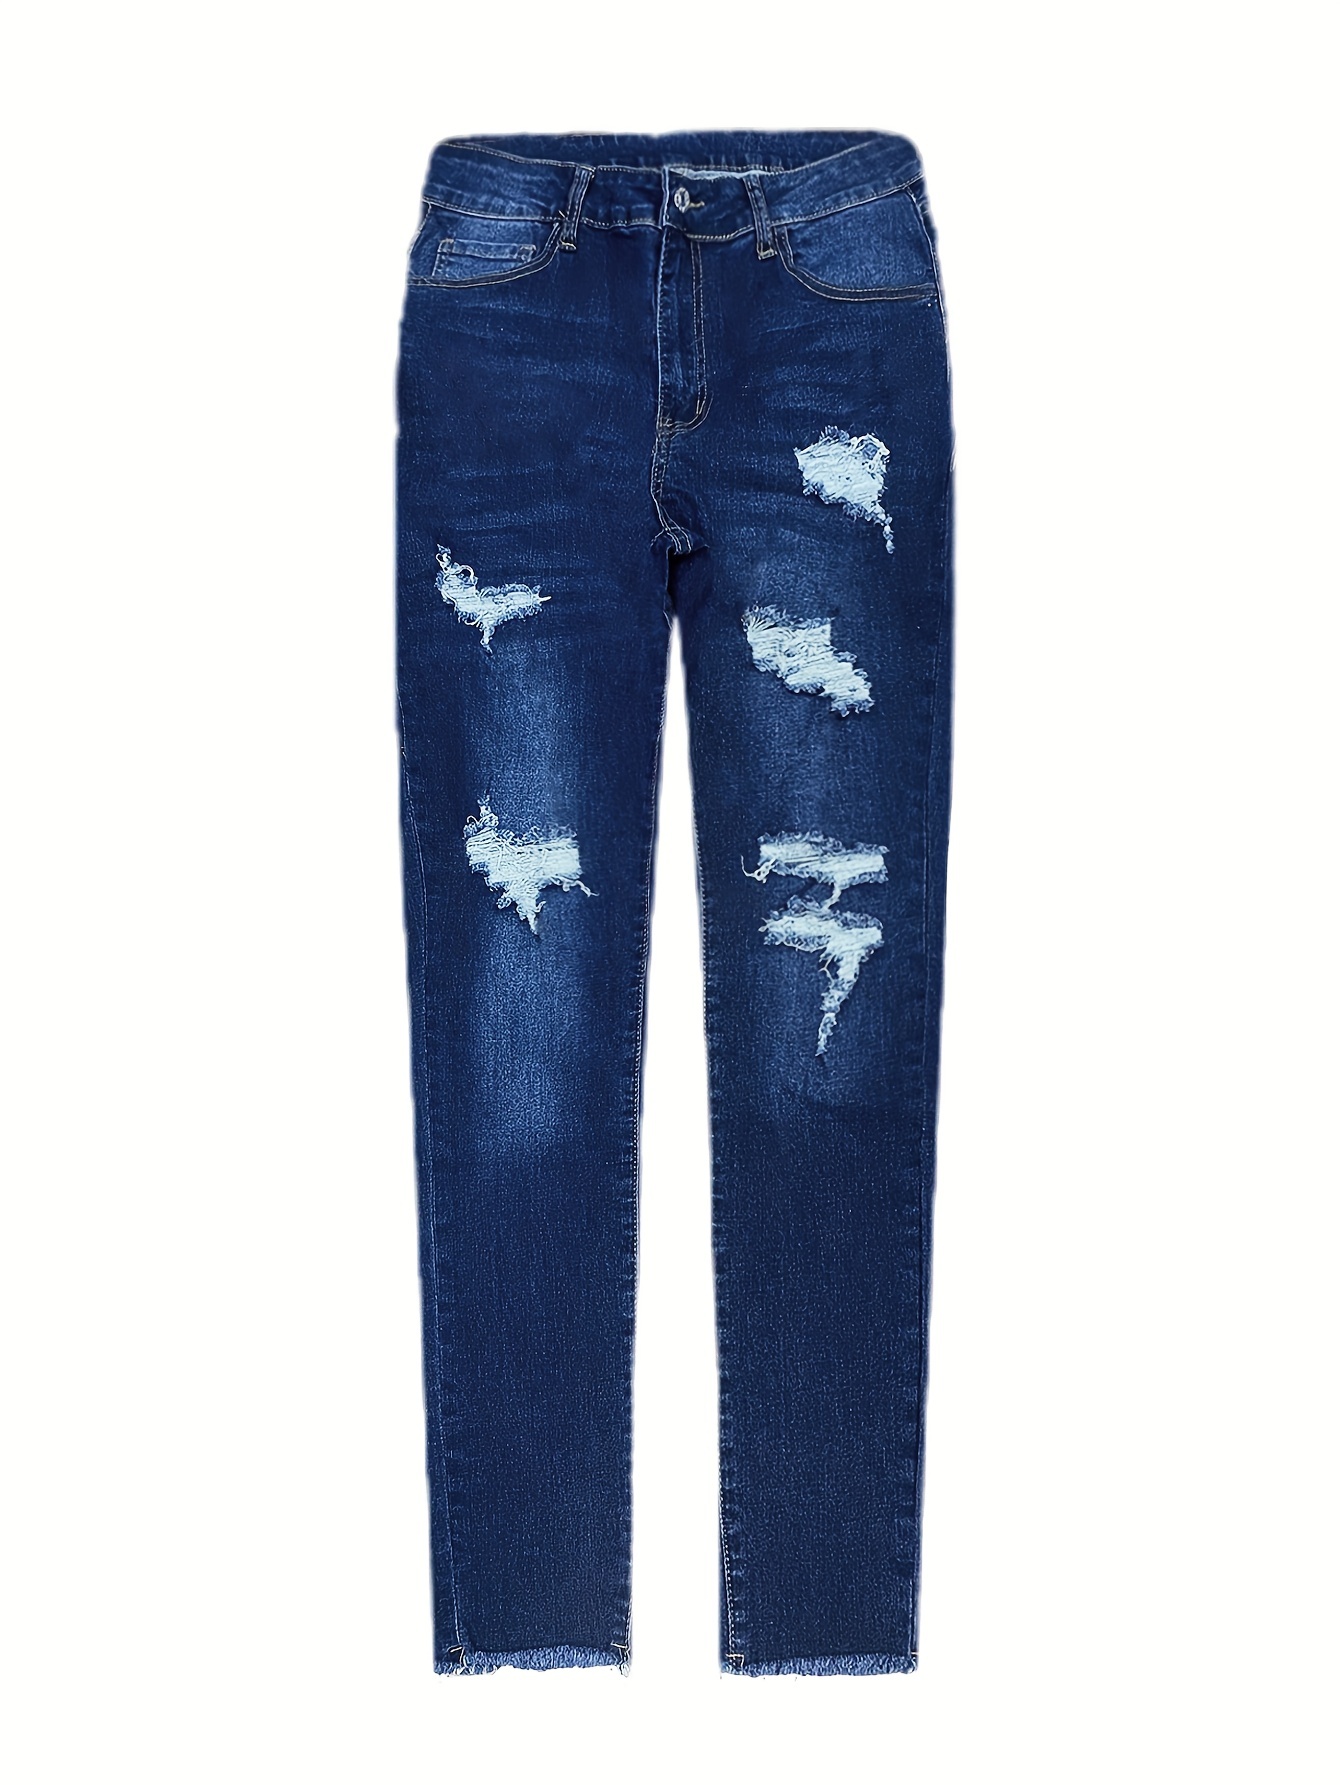 Jeans Desgastados De Talle Alto, Pantalones De Mezclilla Rectos Estilo  Urbano De Corte Holgado, Jeans Y Ropa De Mezclilla Para Mujer